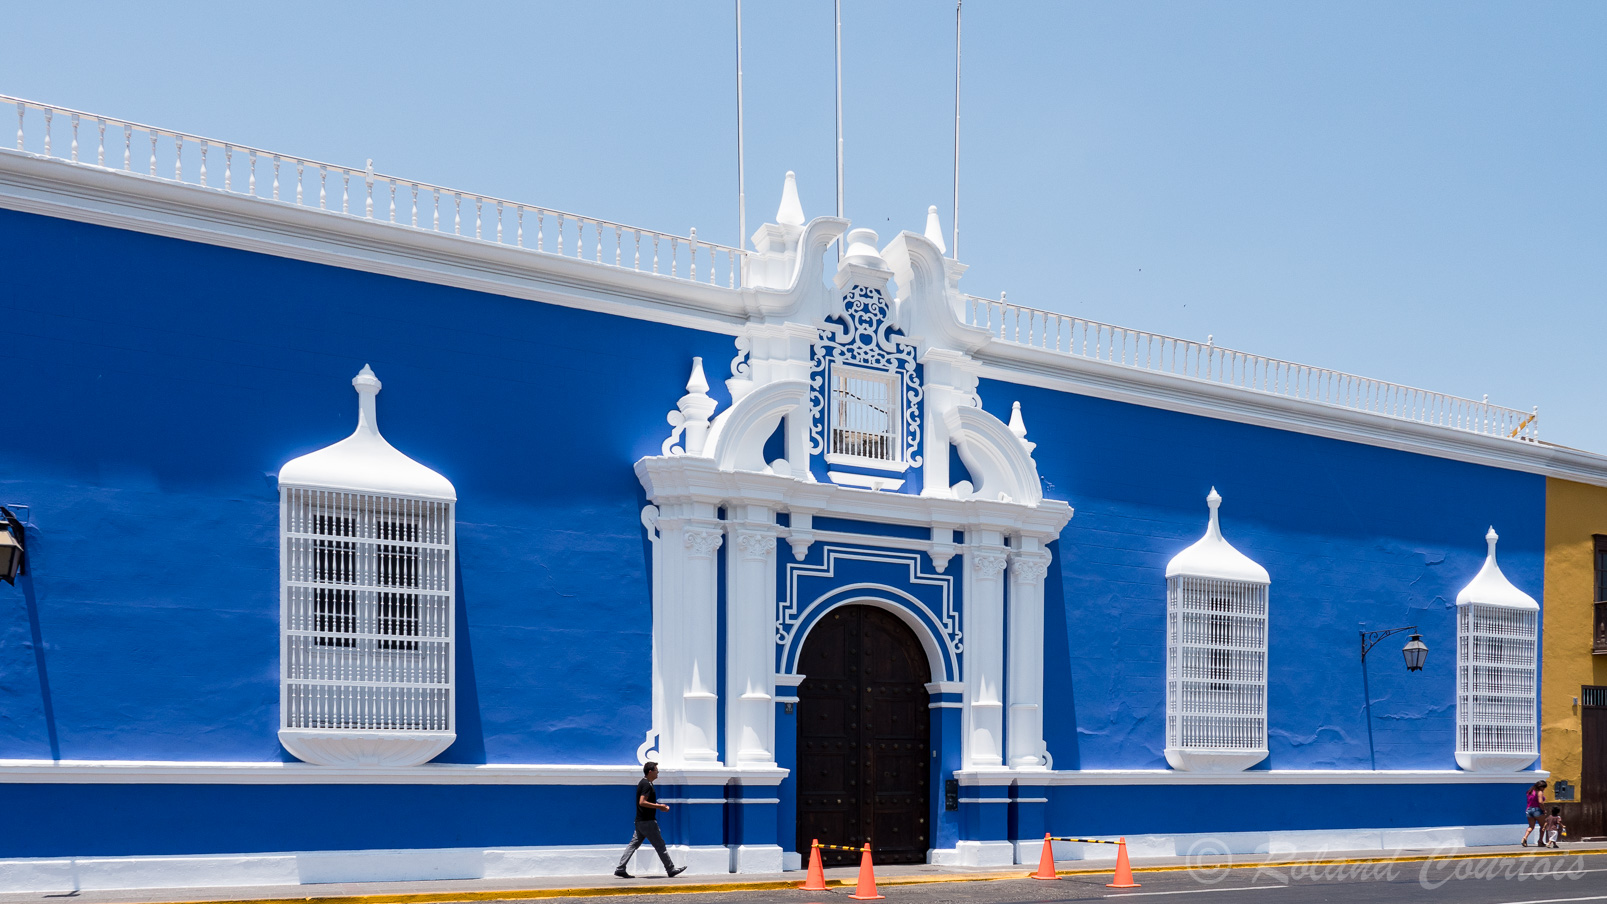 Trujillo : Casa Urquiaga avec ses murs bleu roi et ses fenêtres aux grilles blanches.